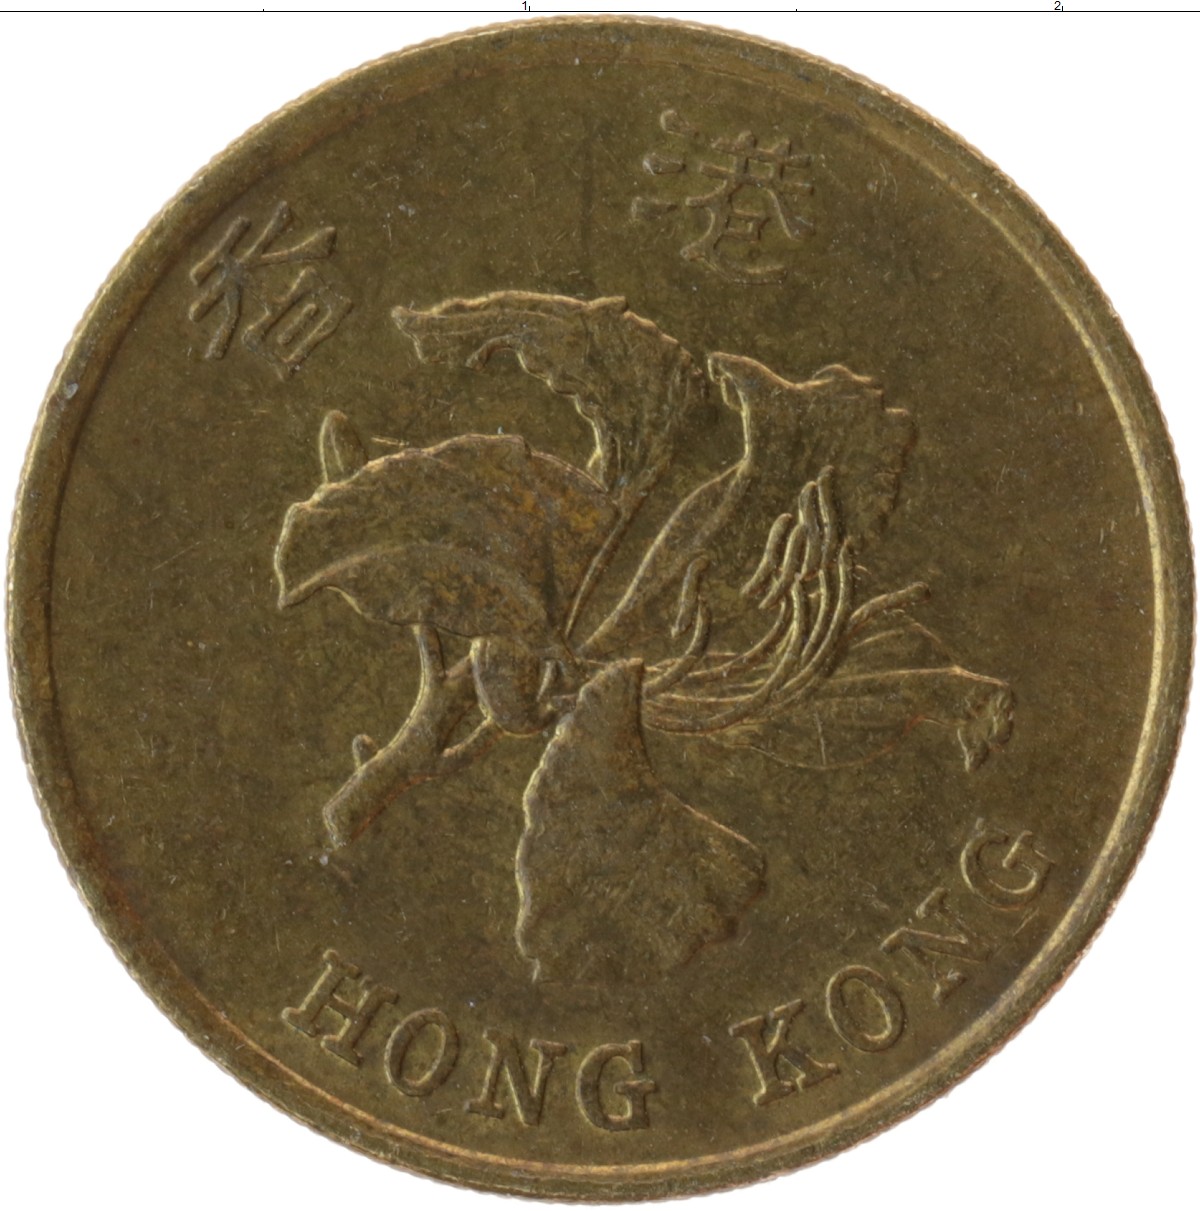 Hkd 899.00 в рублях. Гонконг 50 центов 1997. Монета Fifty Cent Гонконг. Гонконг 50 центов, 1993. Монета Китай 50 центов Chihli.